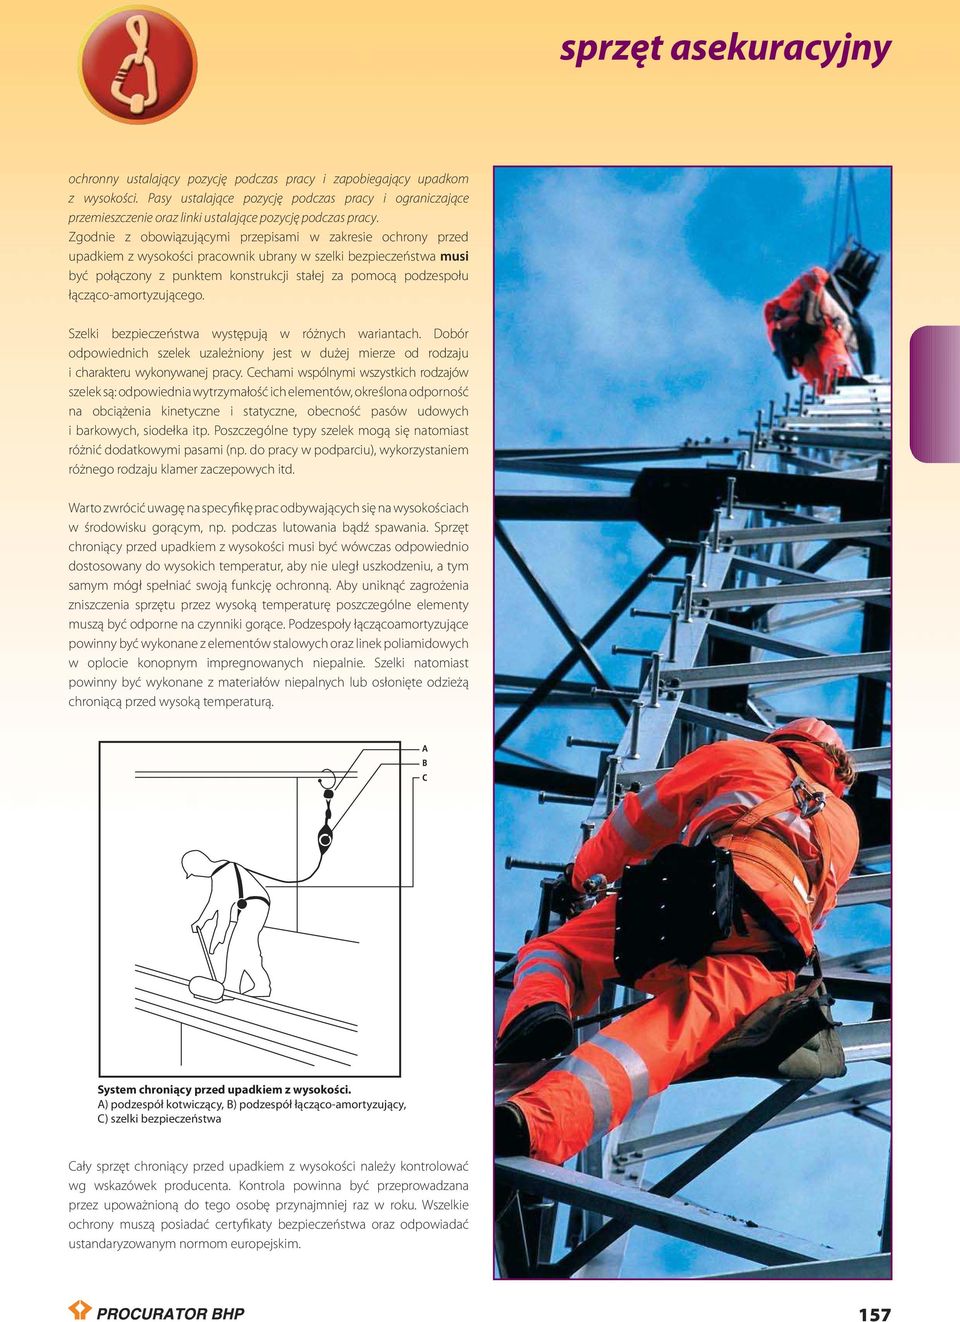 Zgodnie z obowiązującymi przepisami w zakresie ochrony przed upadkiem z wysokości pracownik ubrany w szelki bezpieczeństwa musi być połączony z punktem konstrukcji stałej za pomocą podzespołu